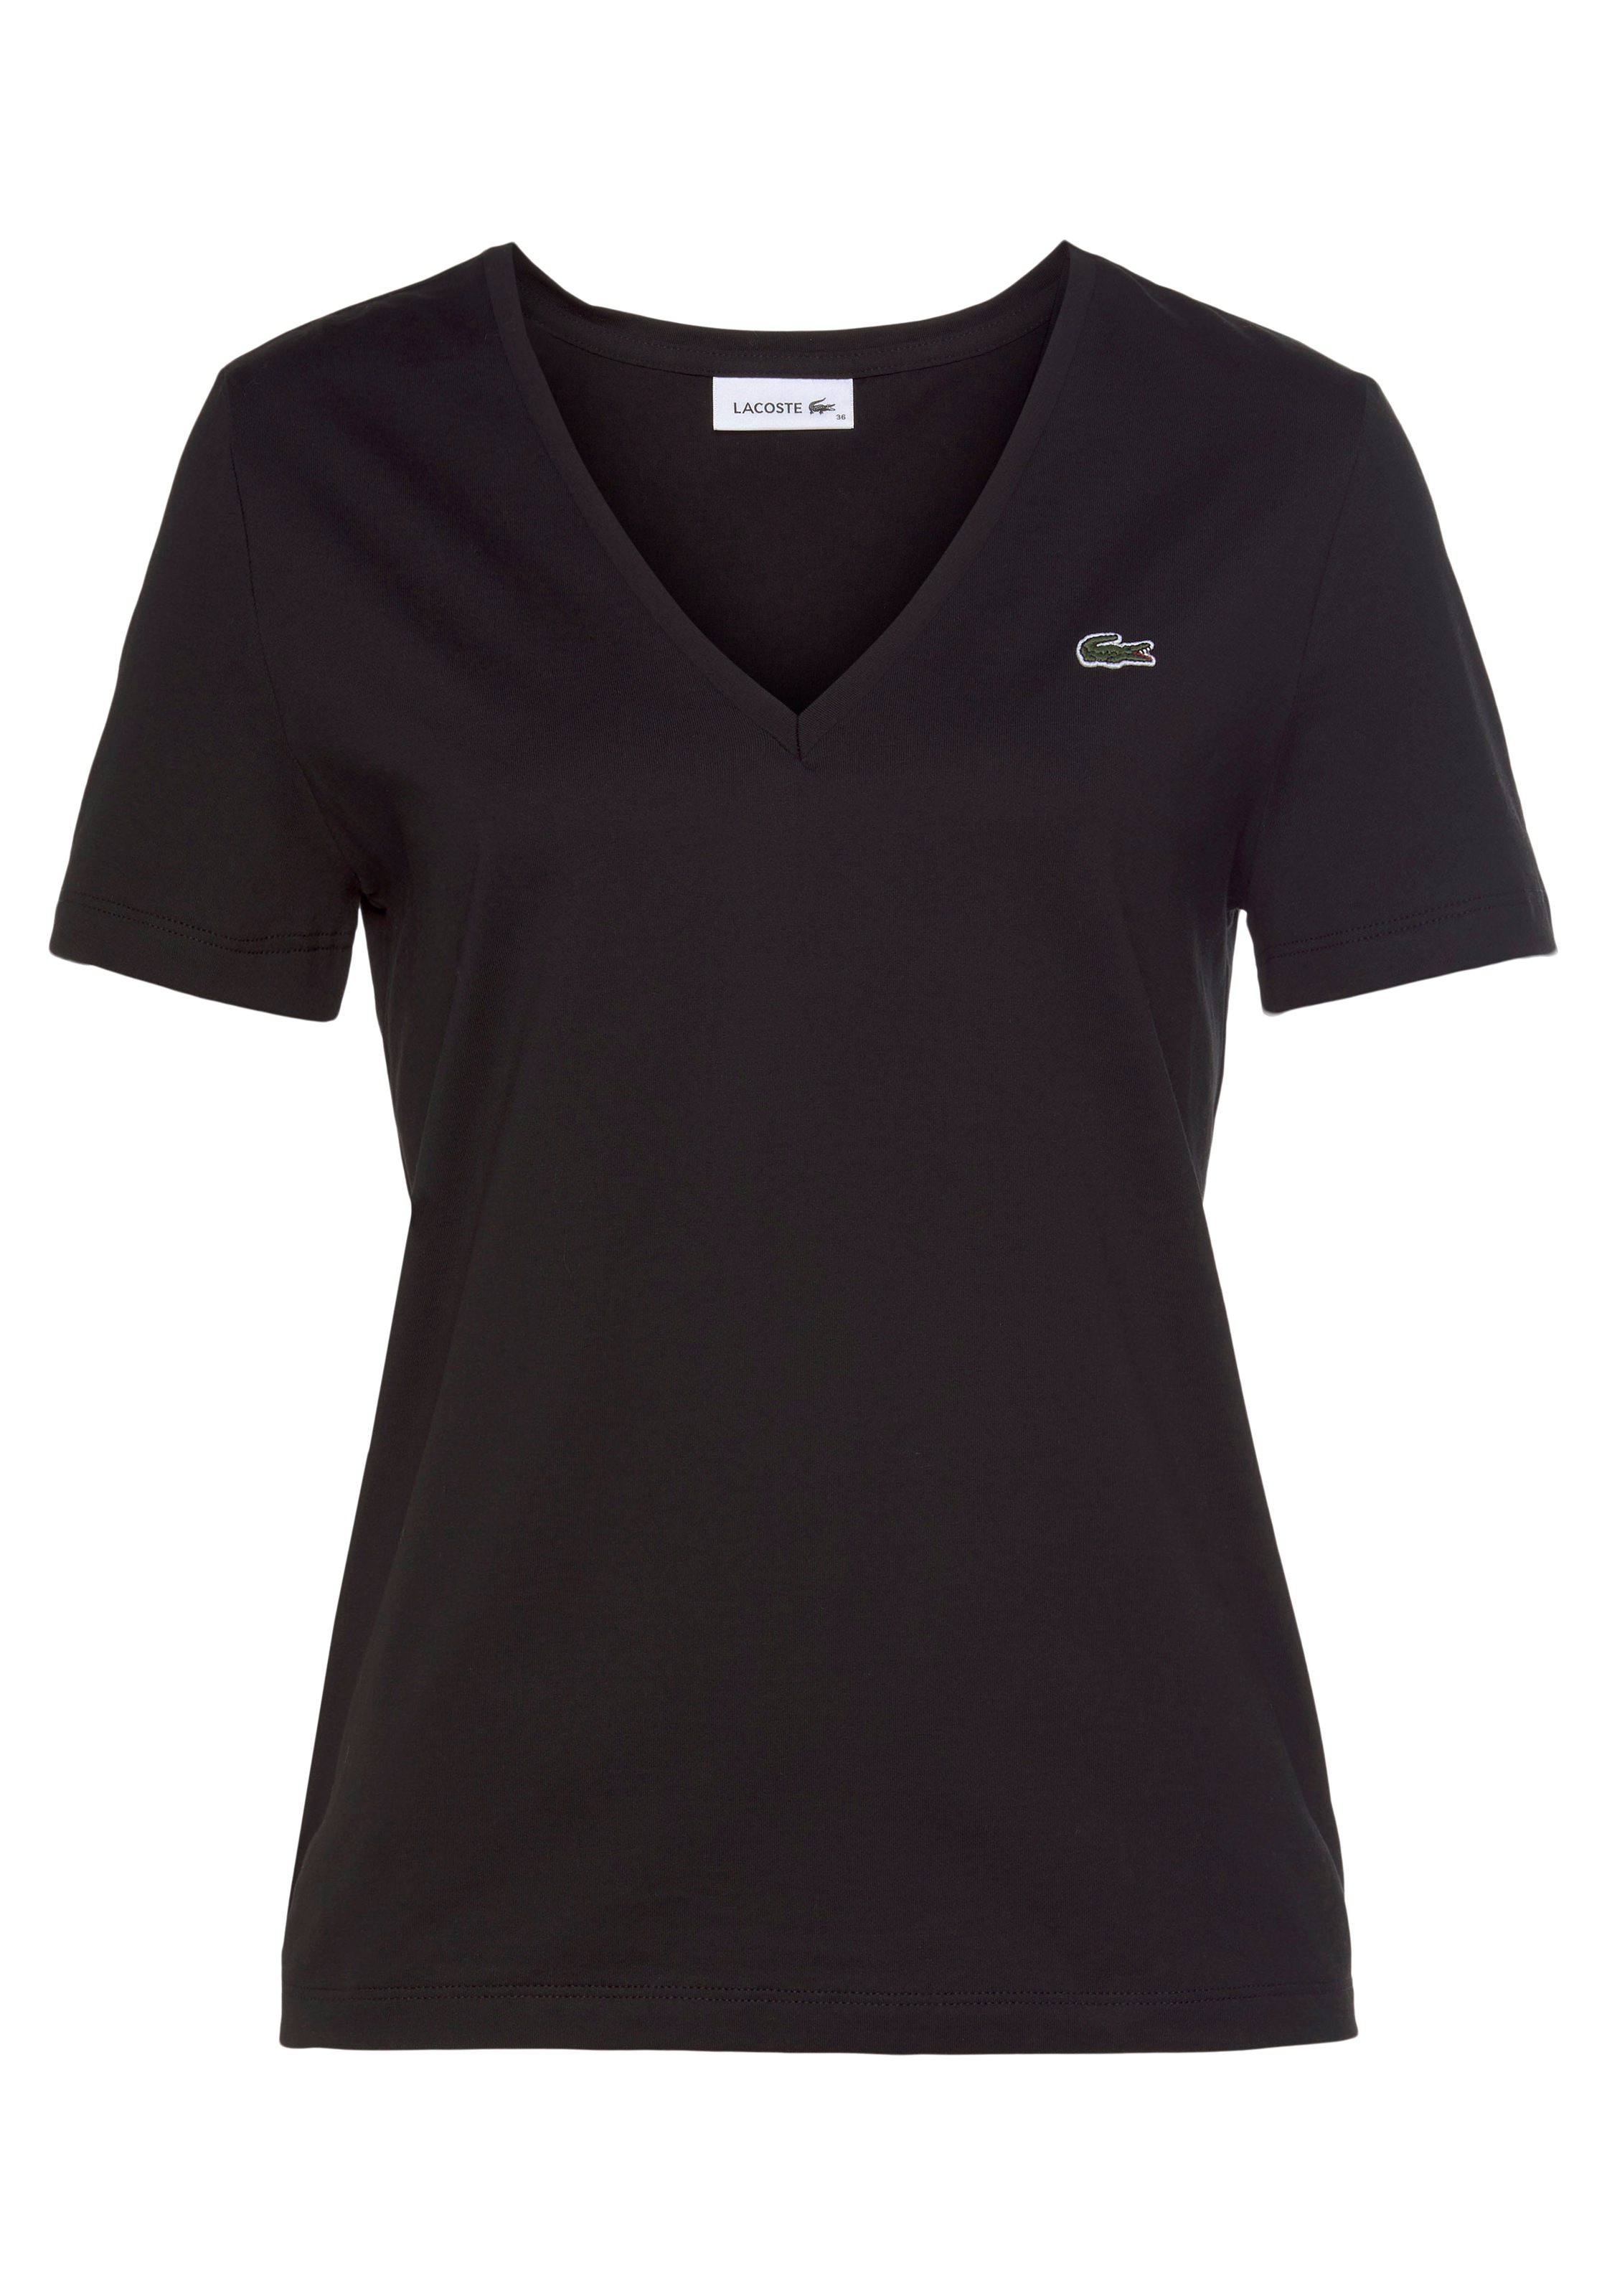 »Lacoste T-Shirt Logo-Patch OTTO bestellen Lacoste mit bei Damen-T-Shirt auf der mit V-Ausschnitt«, tlg.), Brust (1